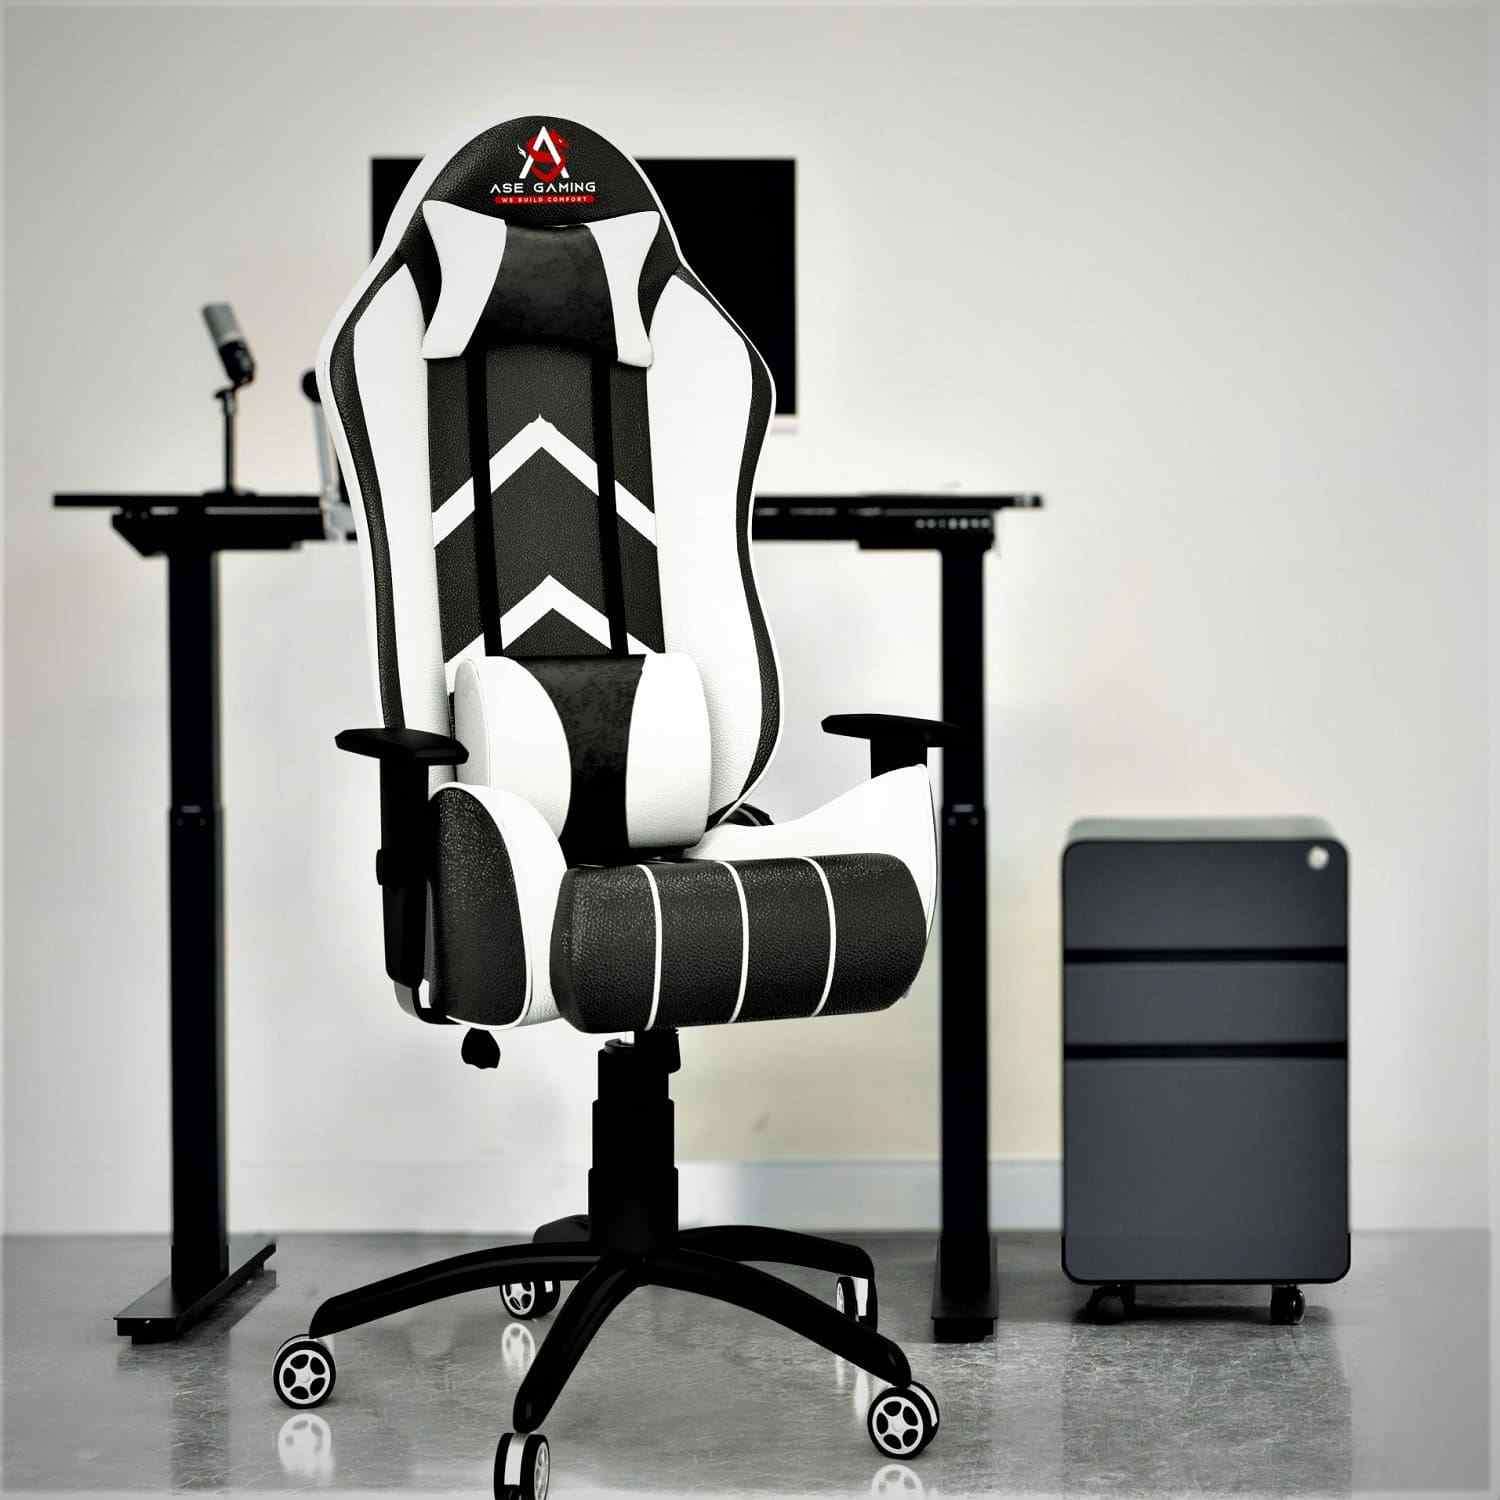 ASE Gaming Ranger Series Gaming Chair (Blue & Black)